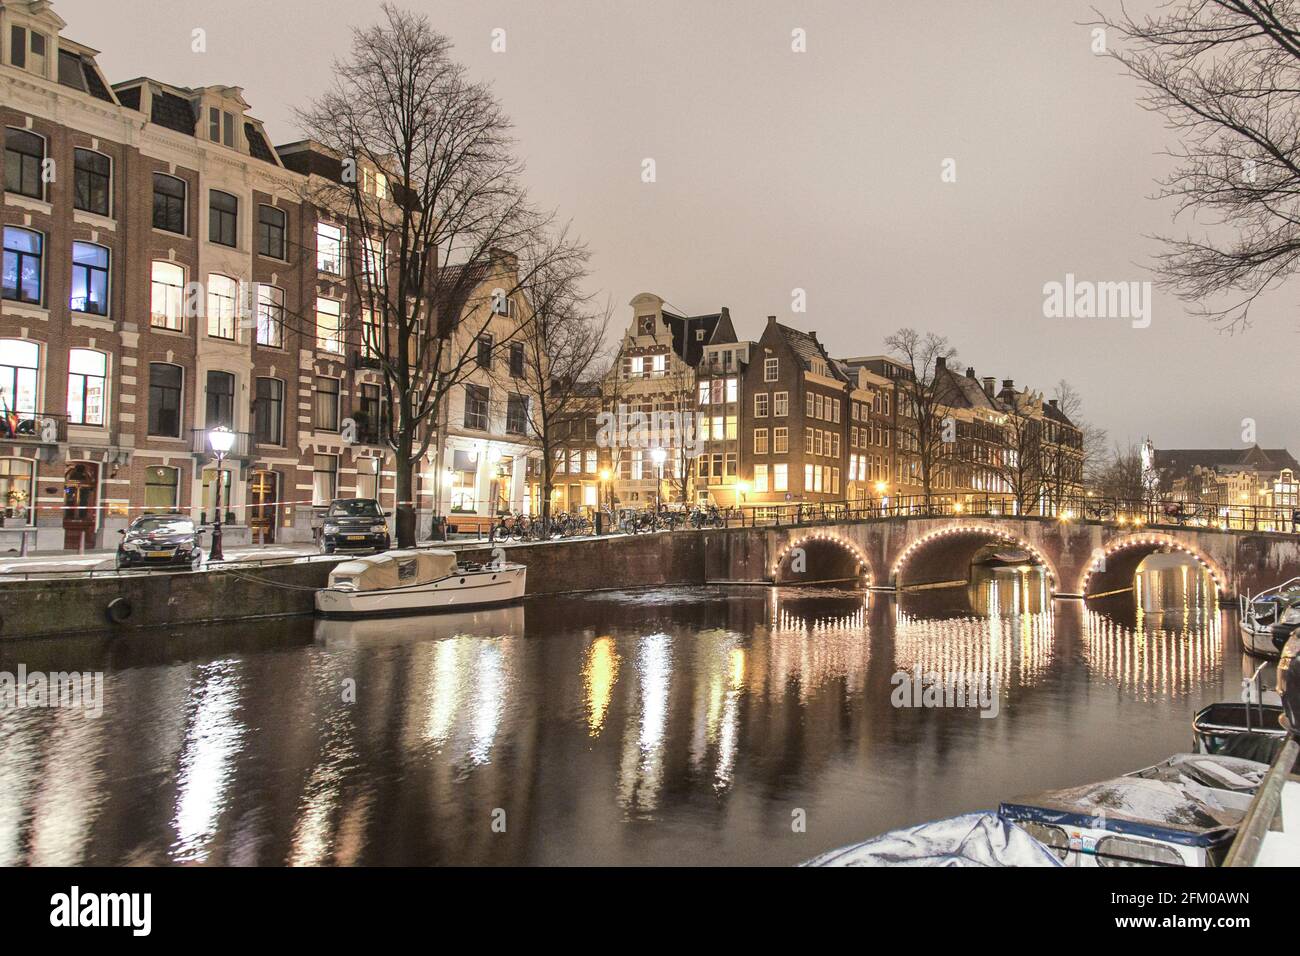 Maisons traditionnelles et pont le long du canal lumineux de Keizersgracht la nuit, Amsterdam, Hollande du Nord, pays-Bas Banque D'Images